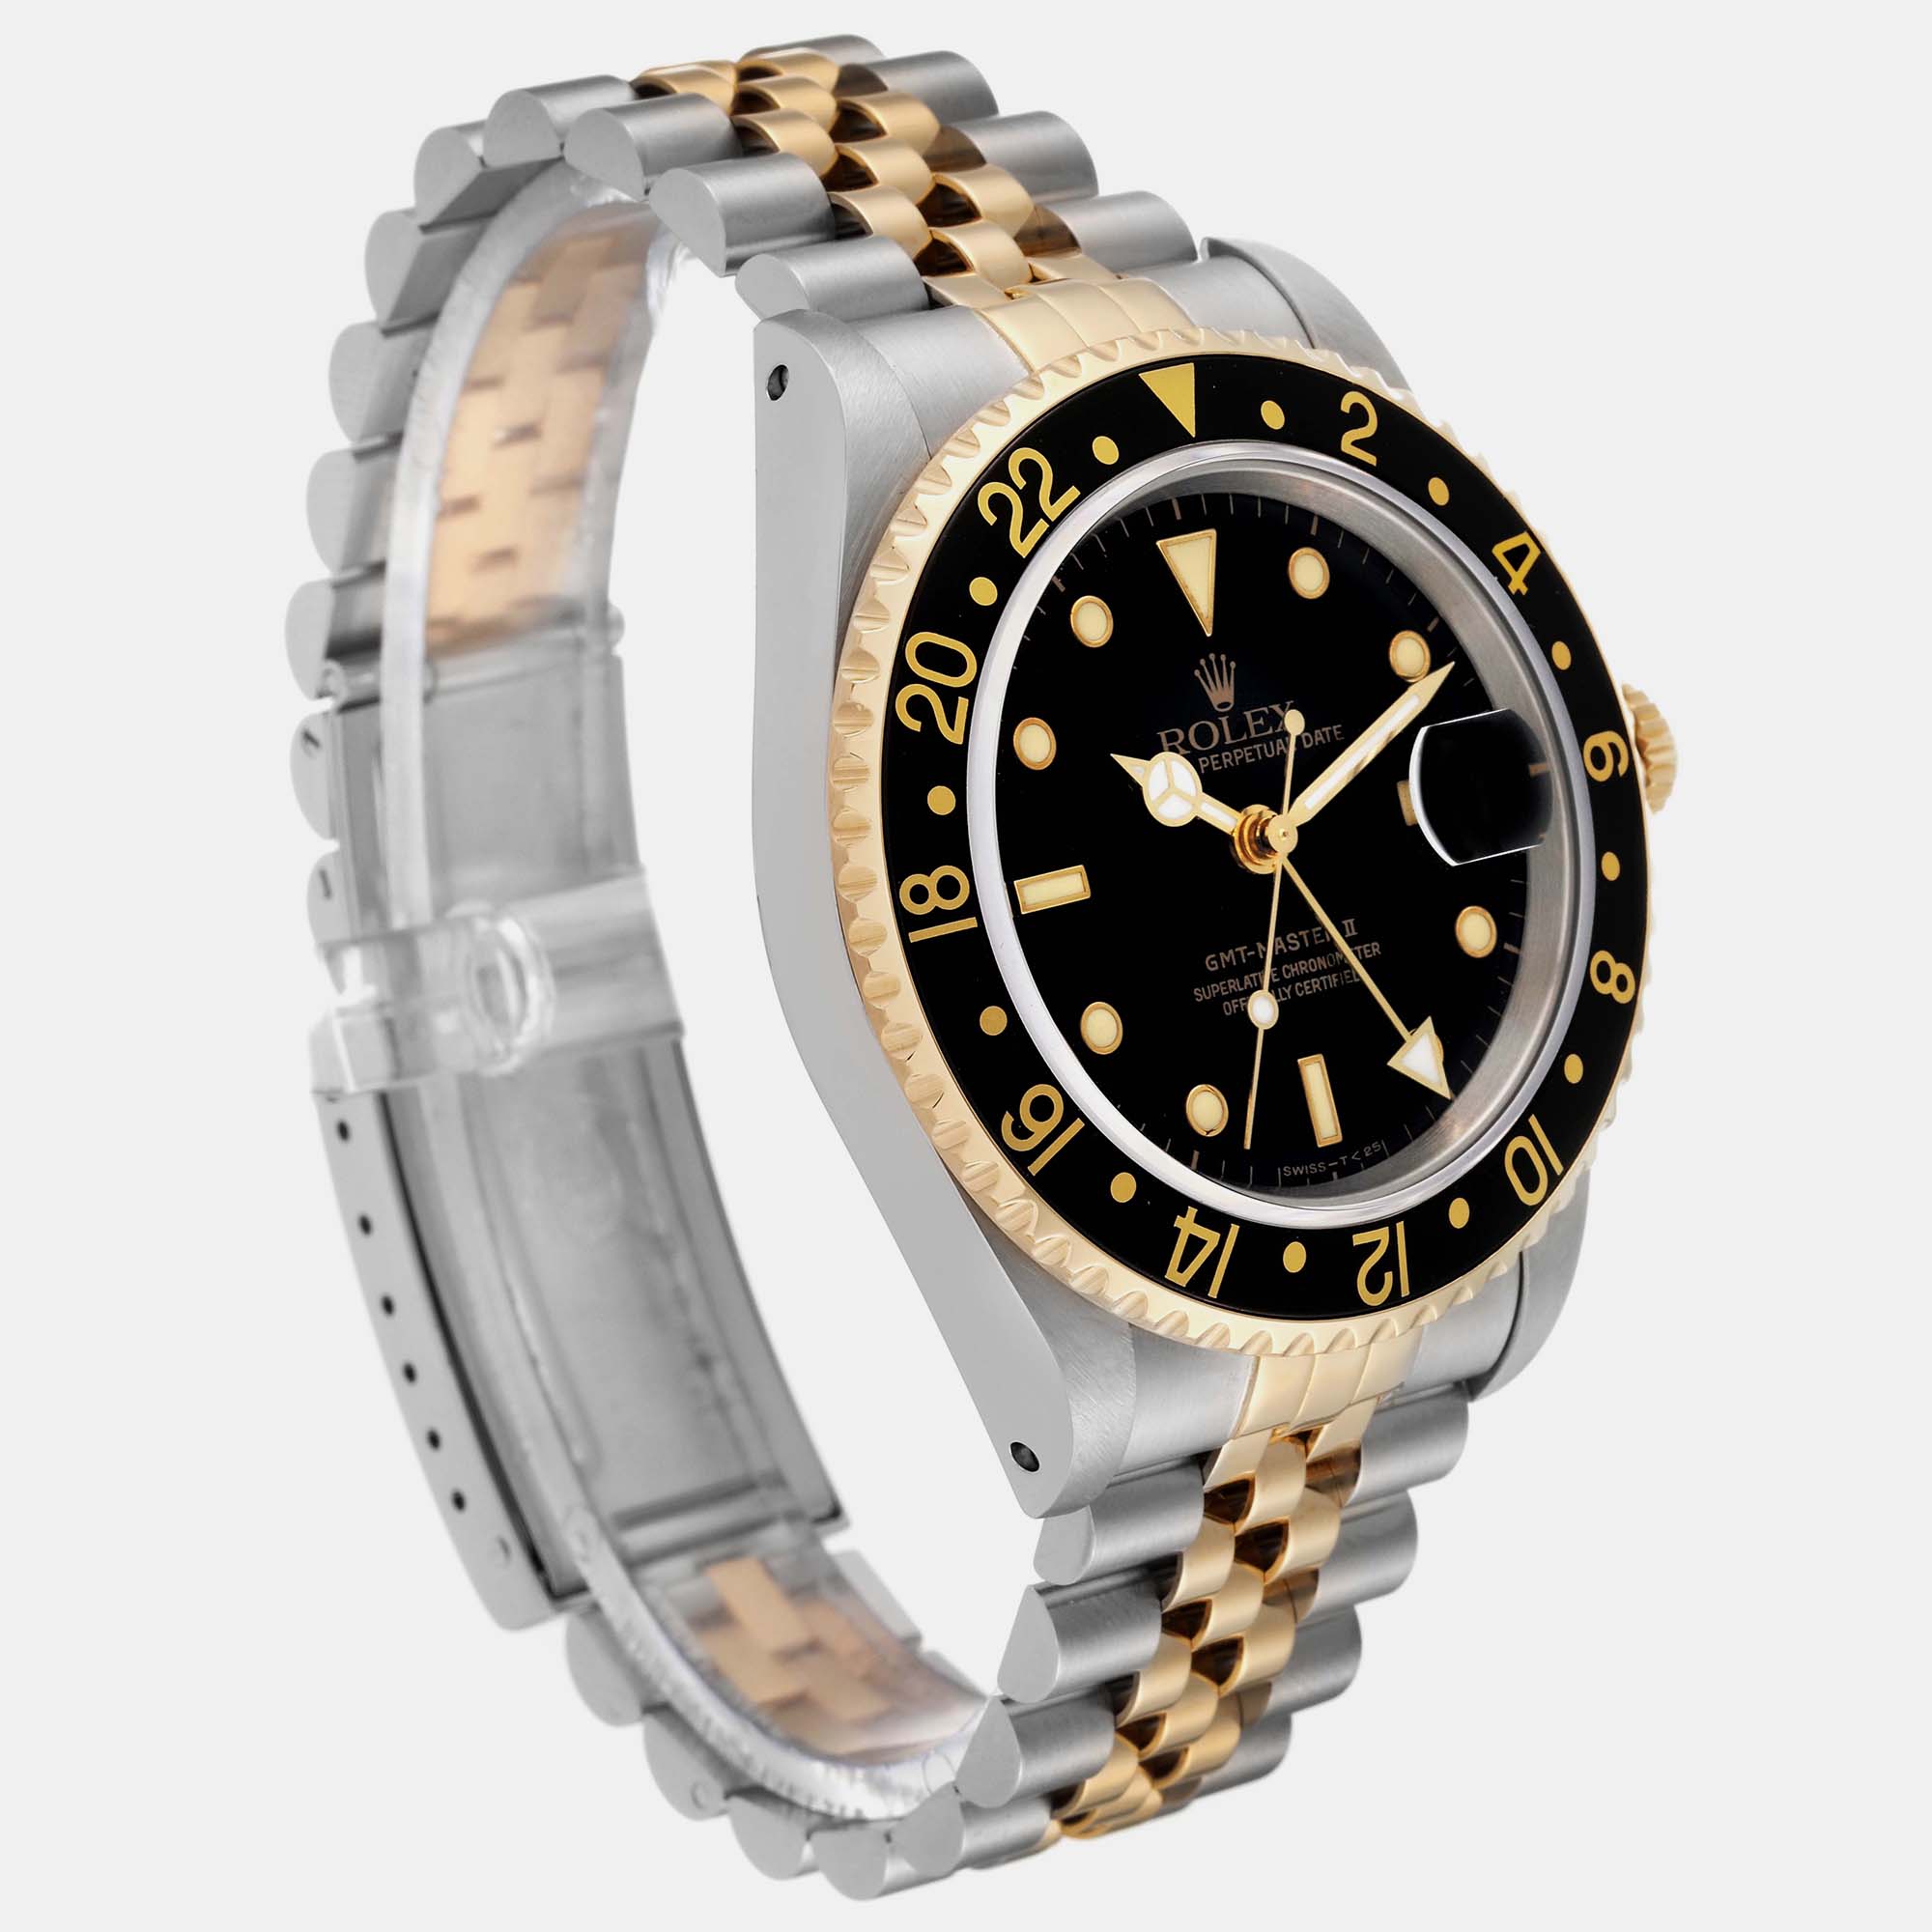 Rolex GMT Master II Yellow Gold Steel Jubilee Bracelet Men's Watch 16713 40 Mm